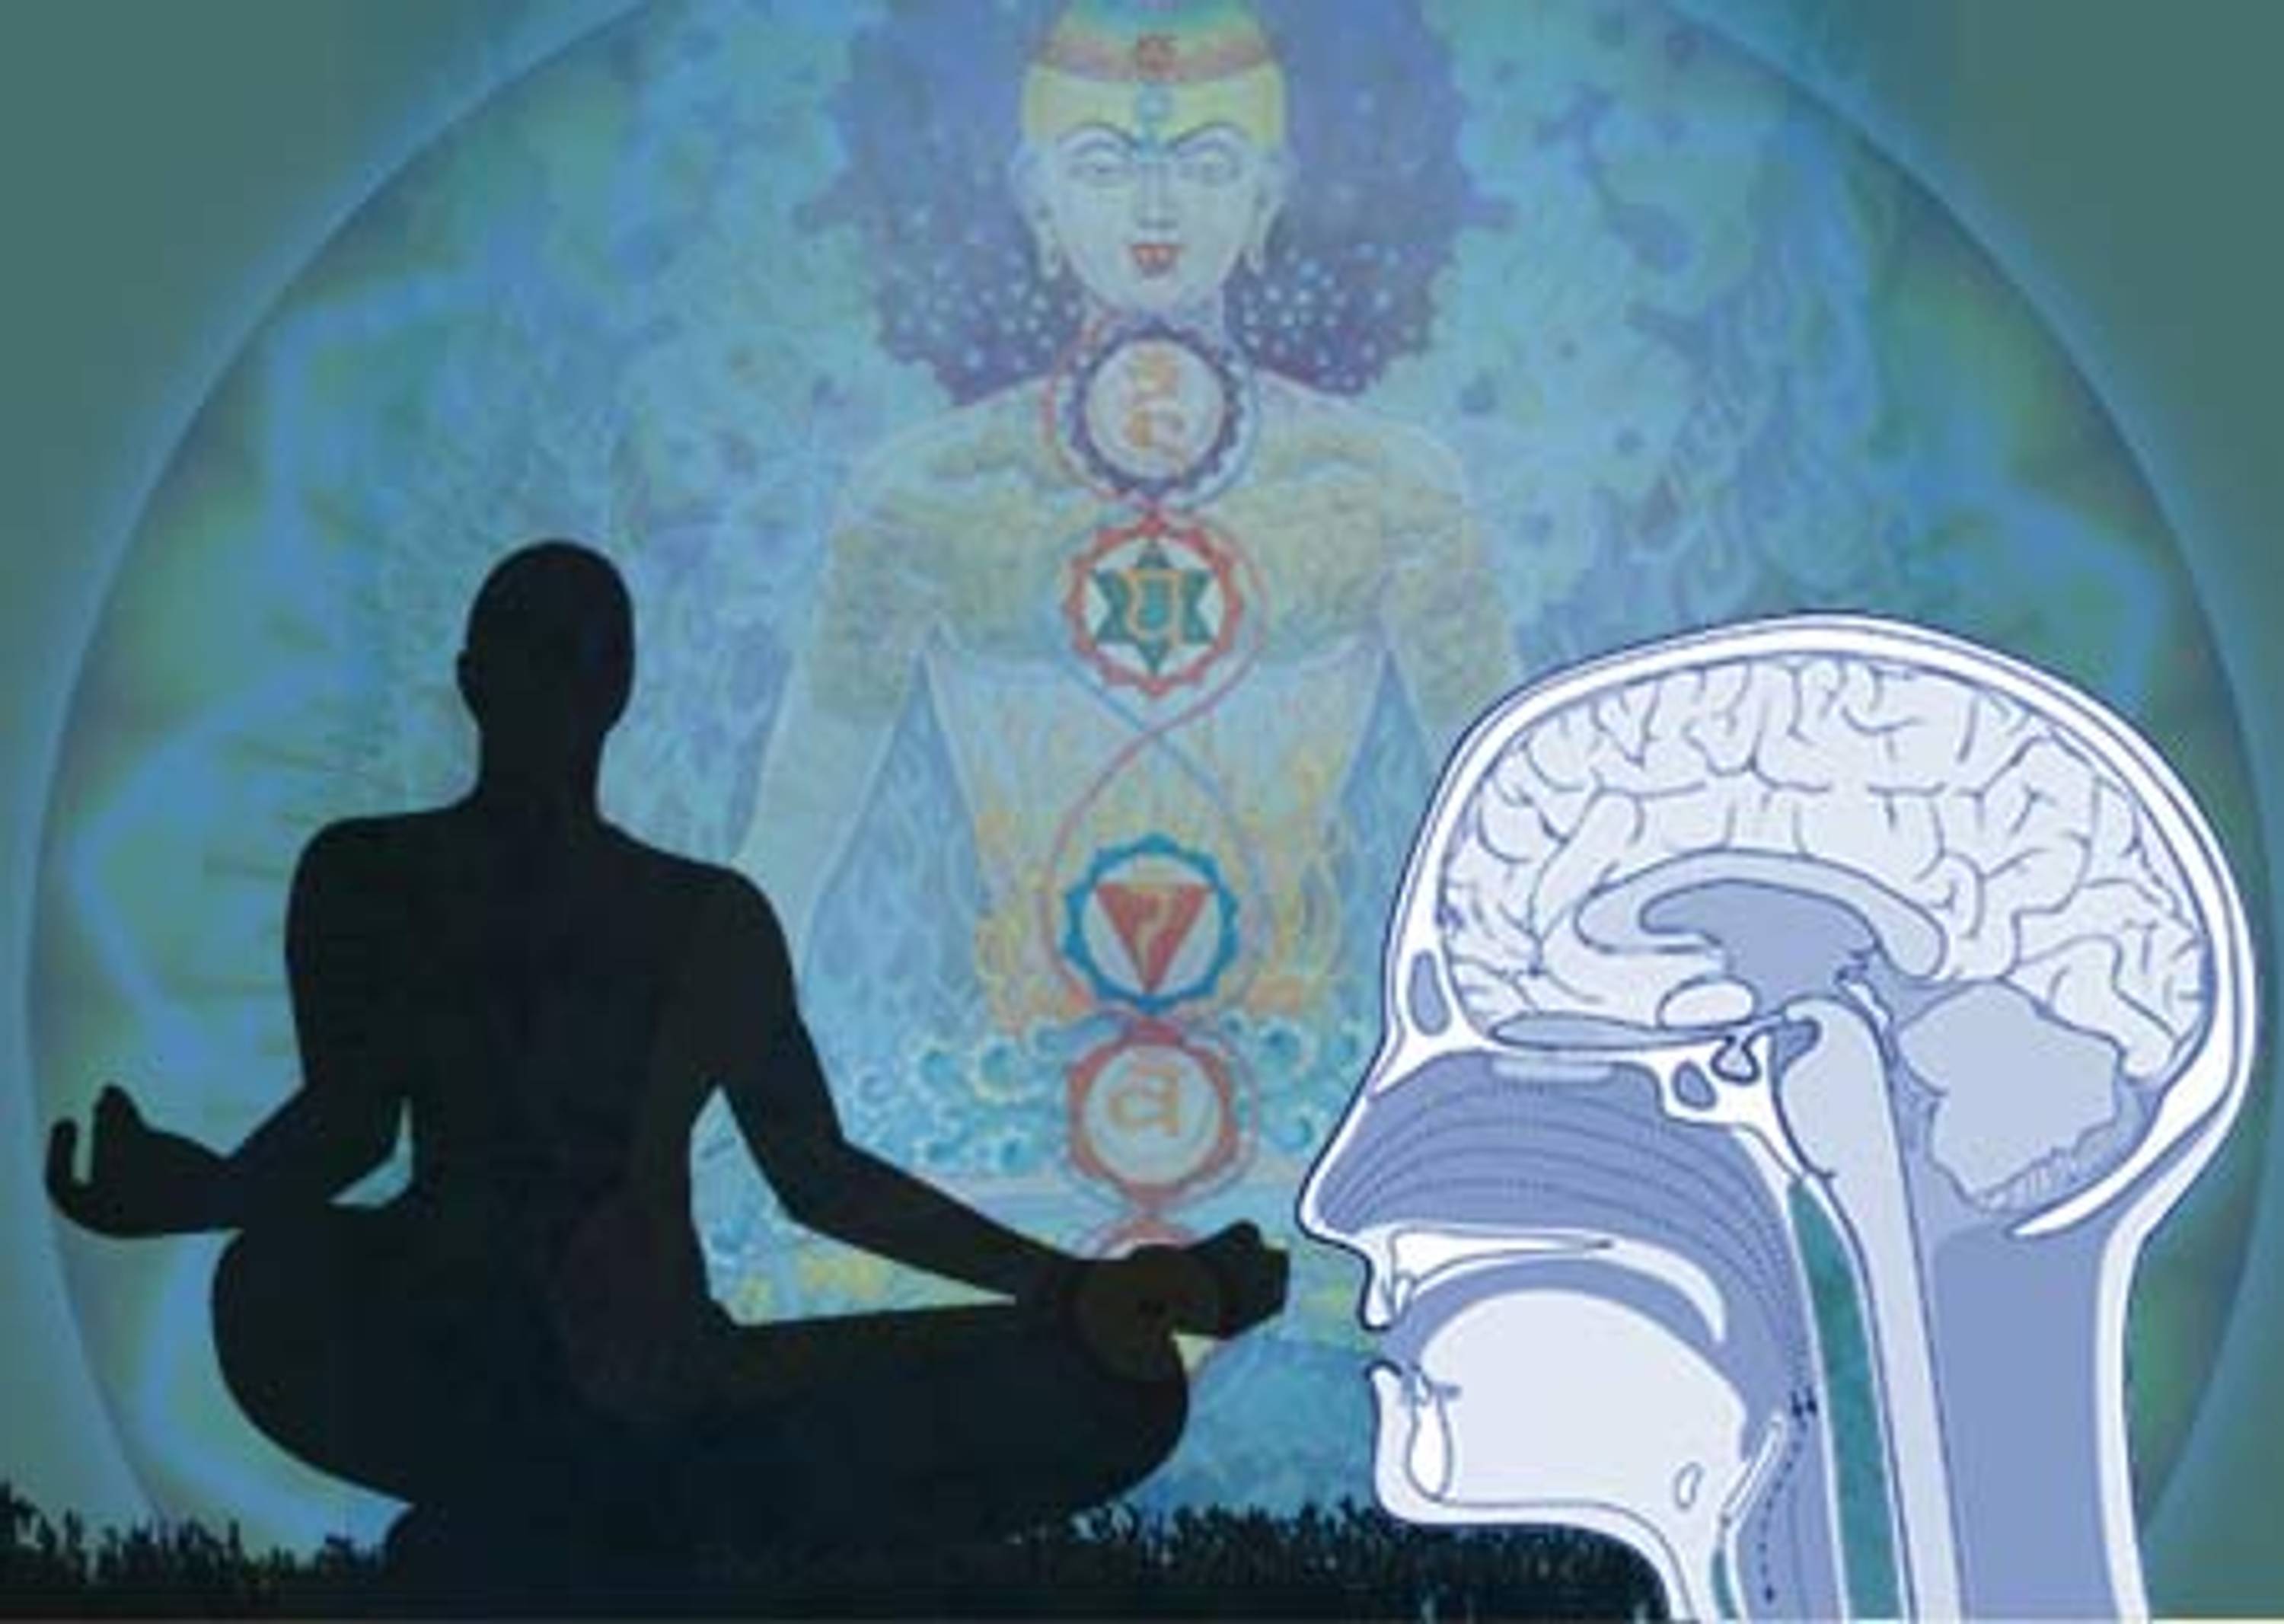 Влияние медитации